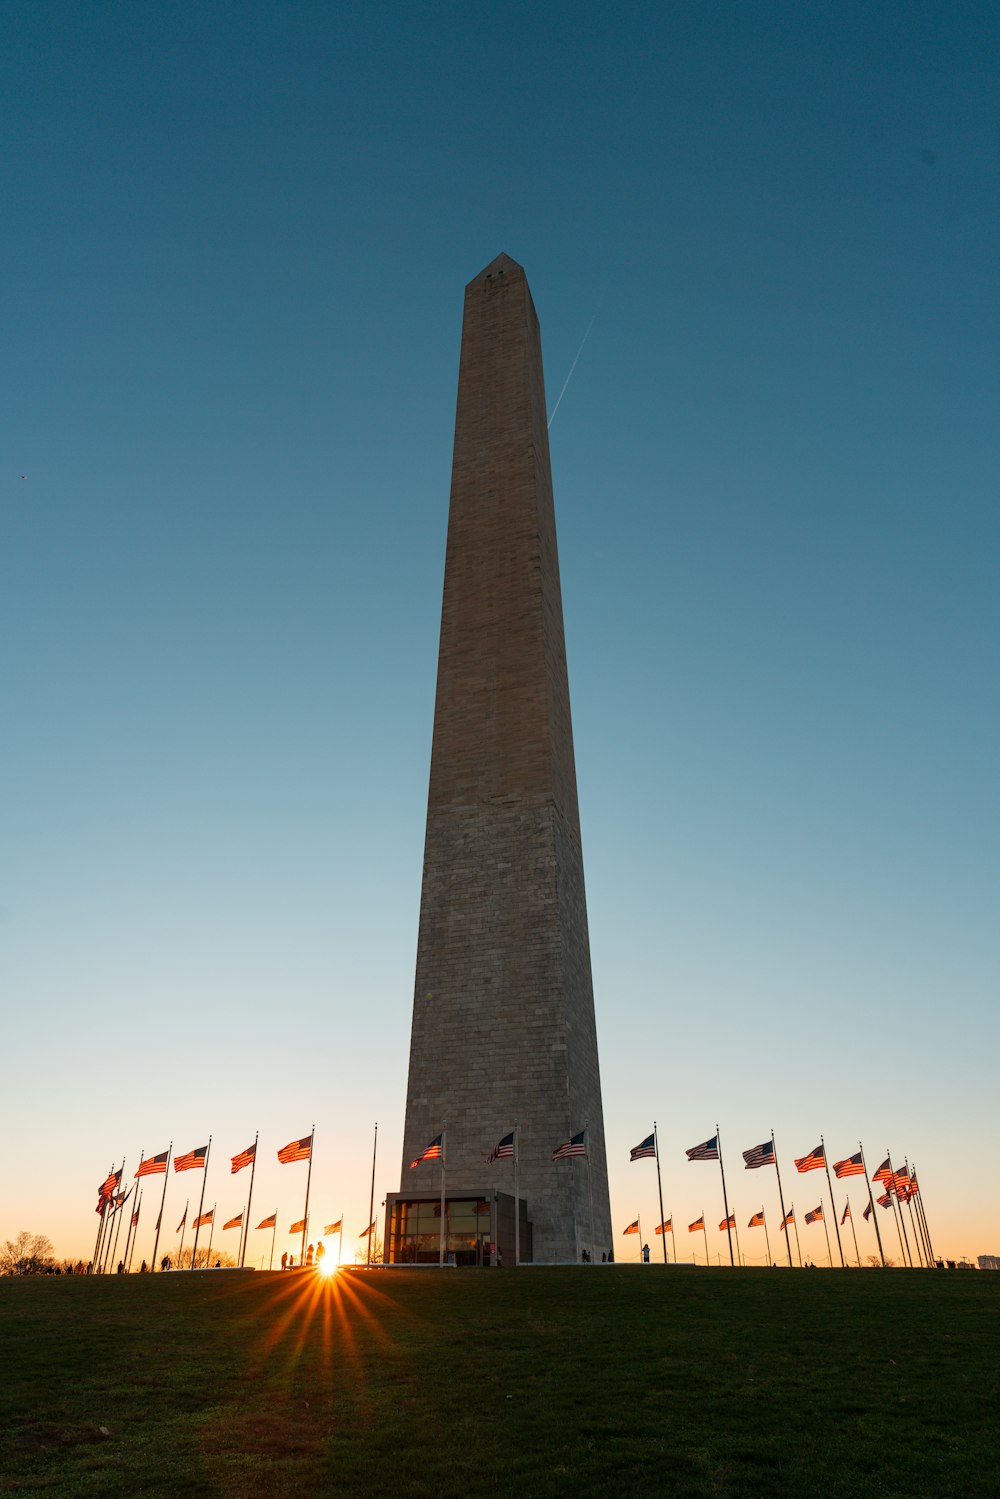 um monumento alto com bandeiras ao redor dele com o Monumento a Washington ao fundo